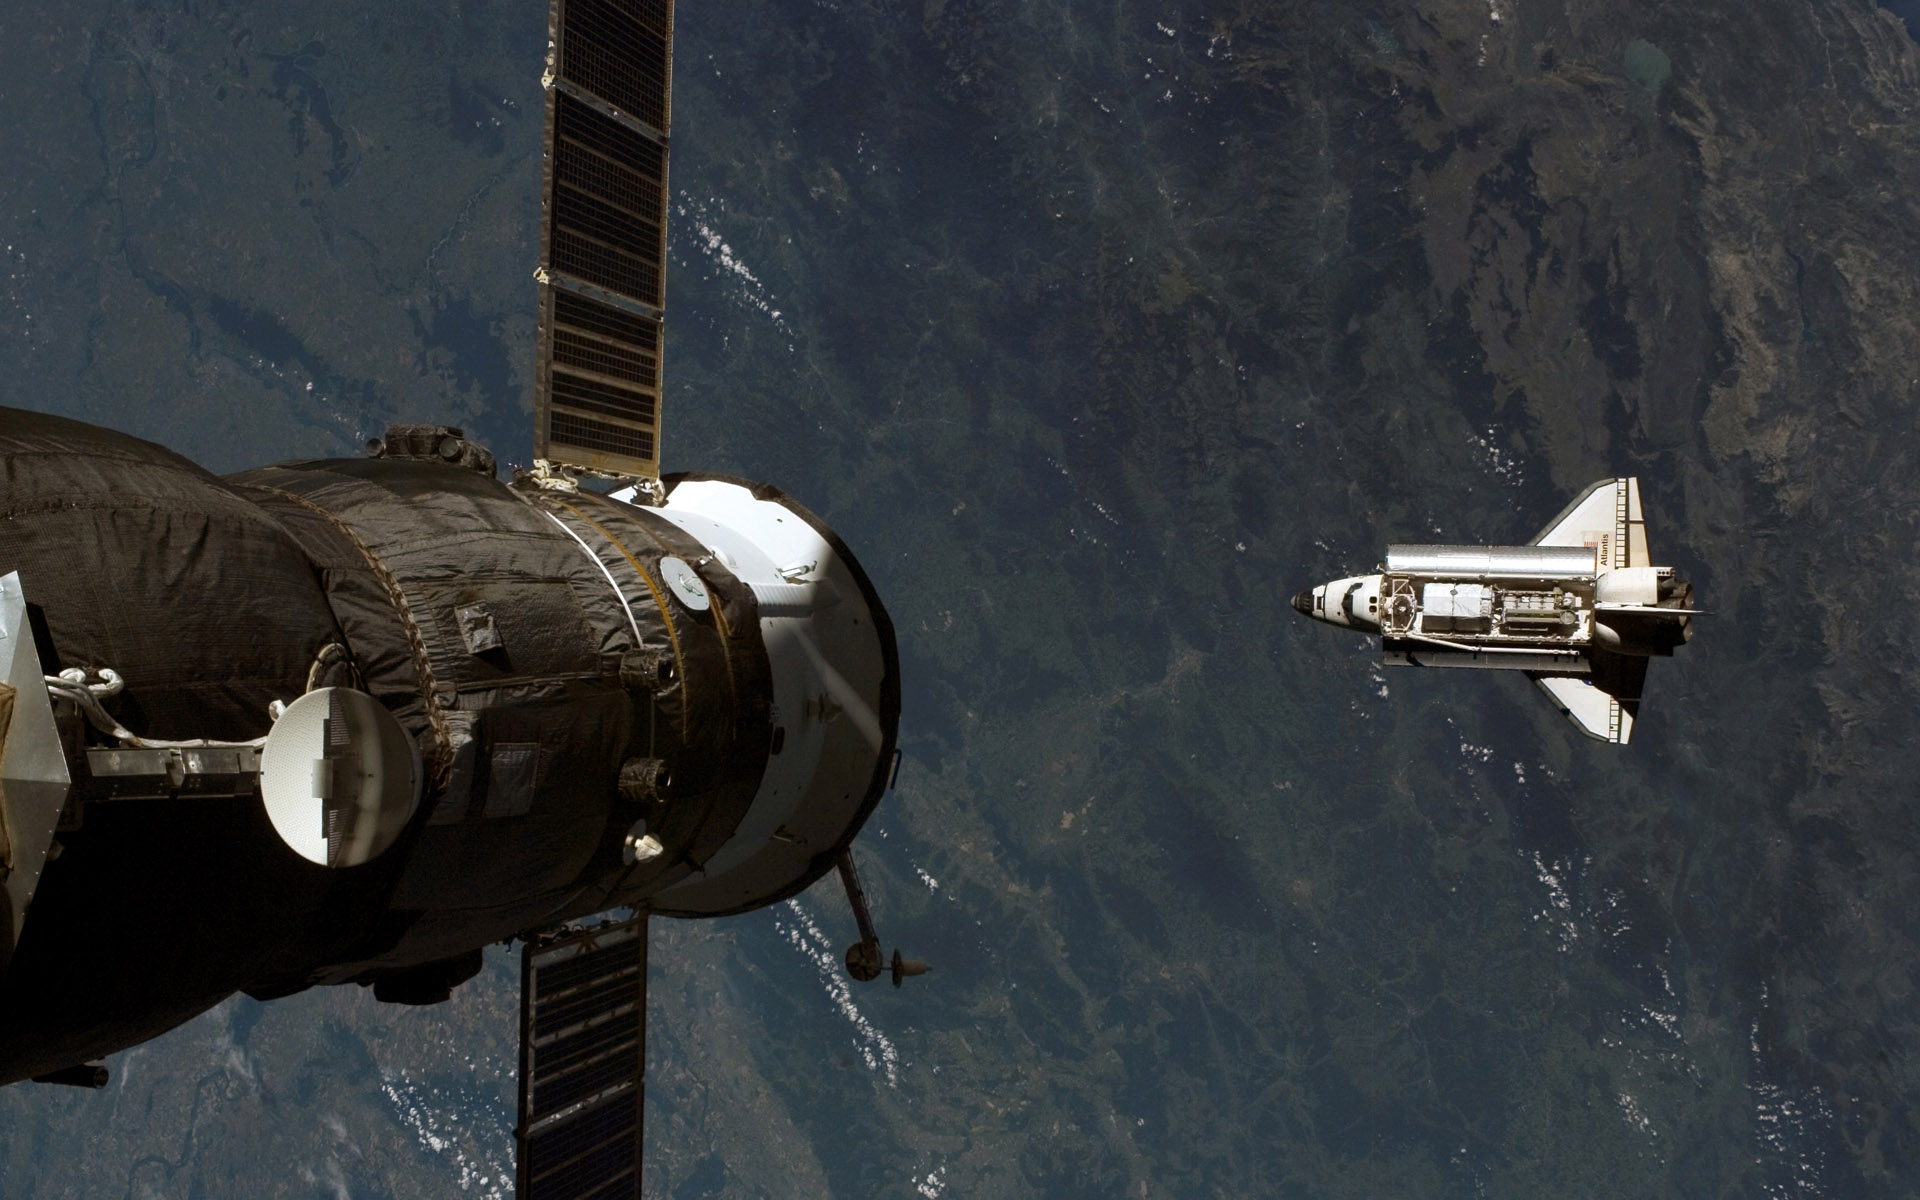 Фото космического корабля в космосе. Спейс шаттл космический корабль. Космический корабль шаттл Атлантис. Космические аппарат Спейс шаттл. Станция мир и шаттл Атлантис.